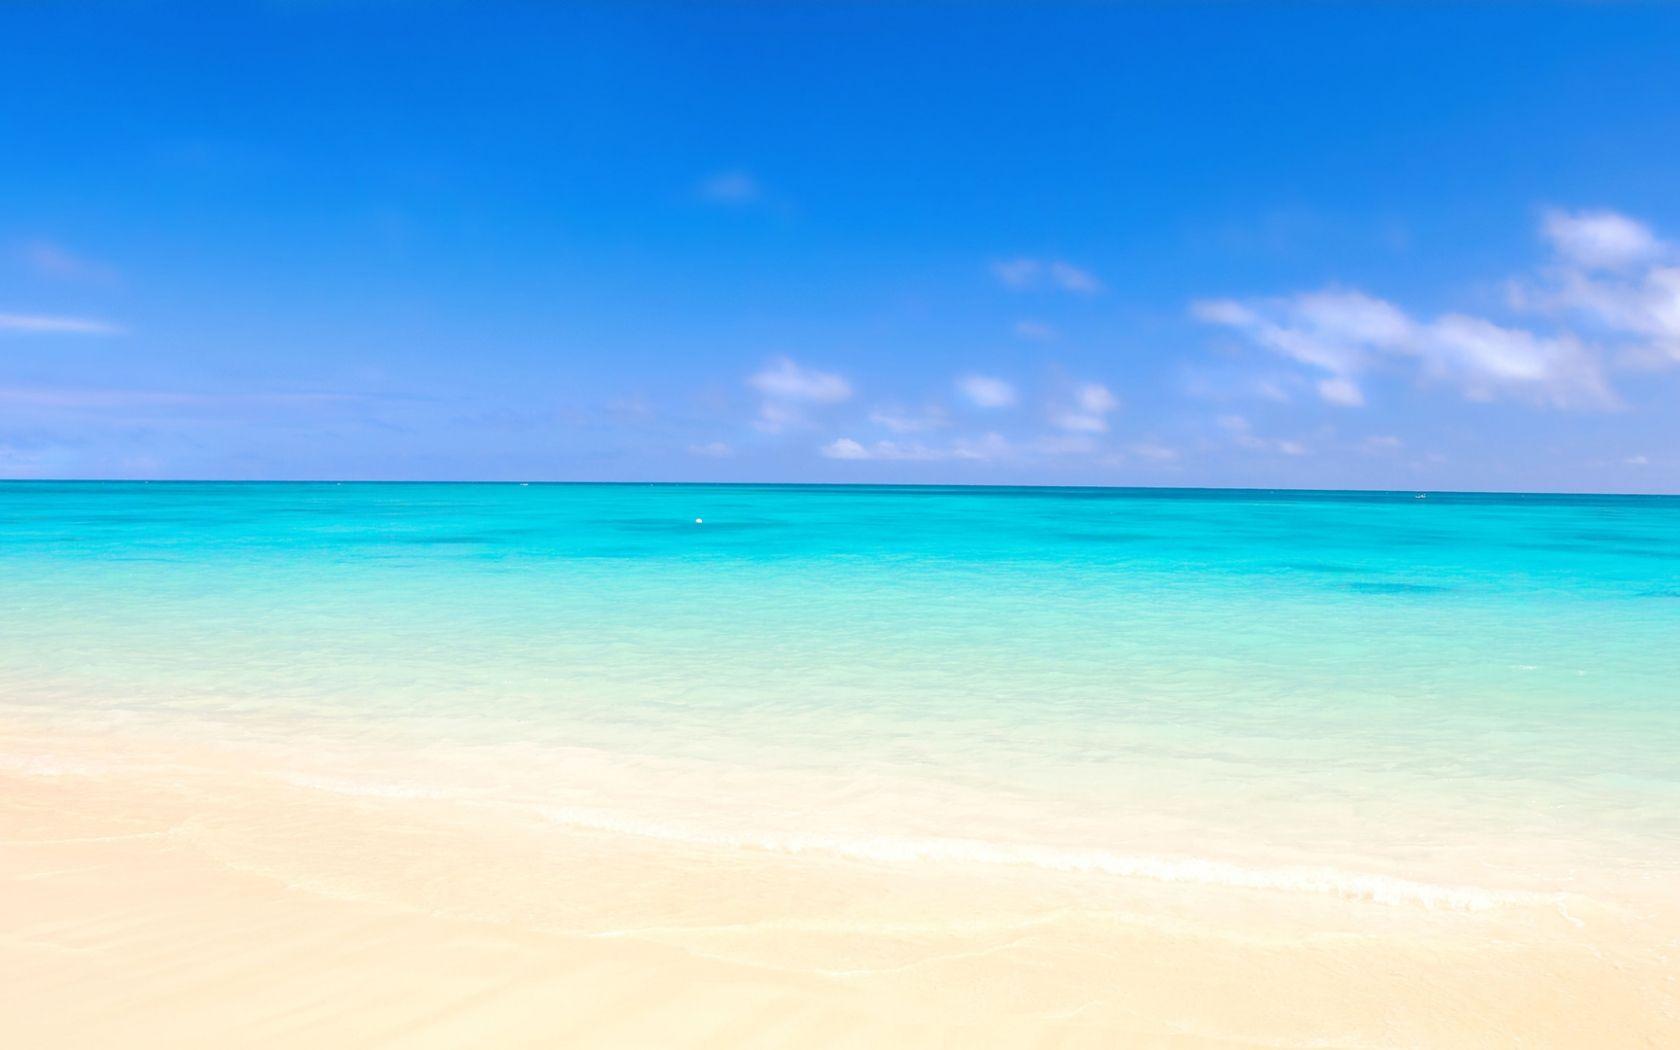 Hình nền bãi biển với bầu trời xanh rực rỡ là một lựa chọn thú vị để trang trí cho thiết bị của bạn. Hình nền sẽ khiến cho không gian trở nên sống động và tươi mới hơn. Hãy chọn các hình nền bãi biển wallpapers với bầu trời xanh và tận hưởng sự bình yên của thiên nhiên.